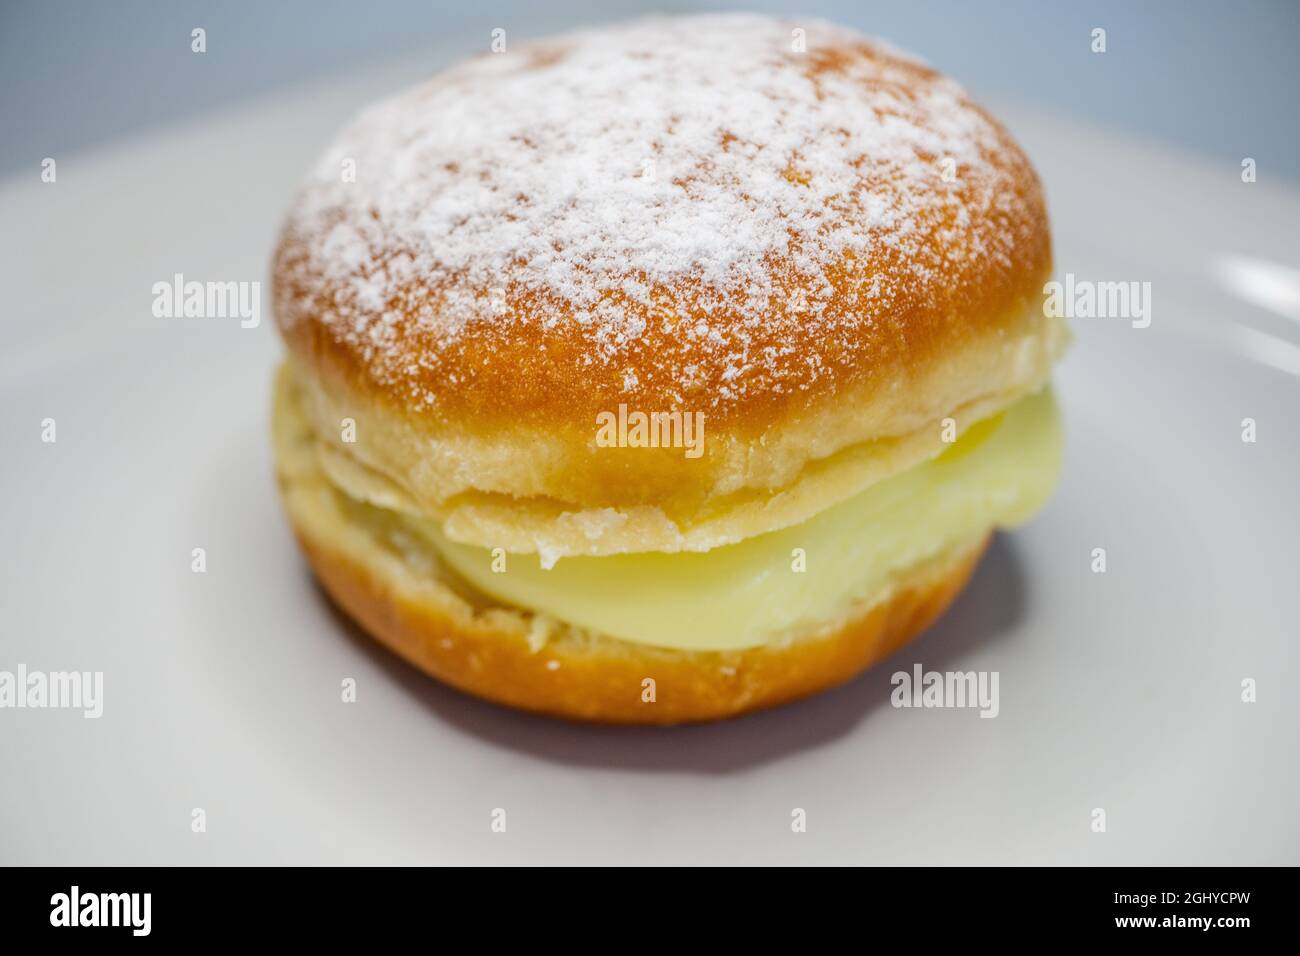 gros plan de la pâte berlinère sur une assiette blanche - plat de pâtisserie allemand avec garniture à la crème vanille Banque D'Images